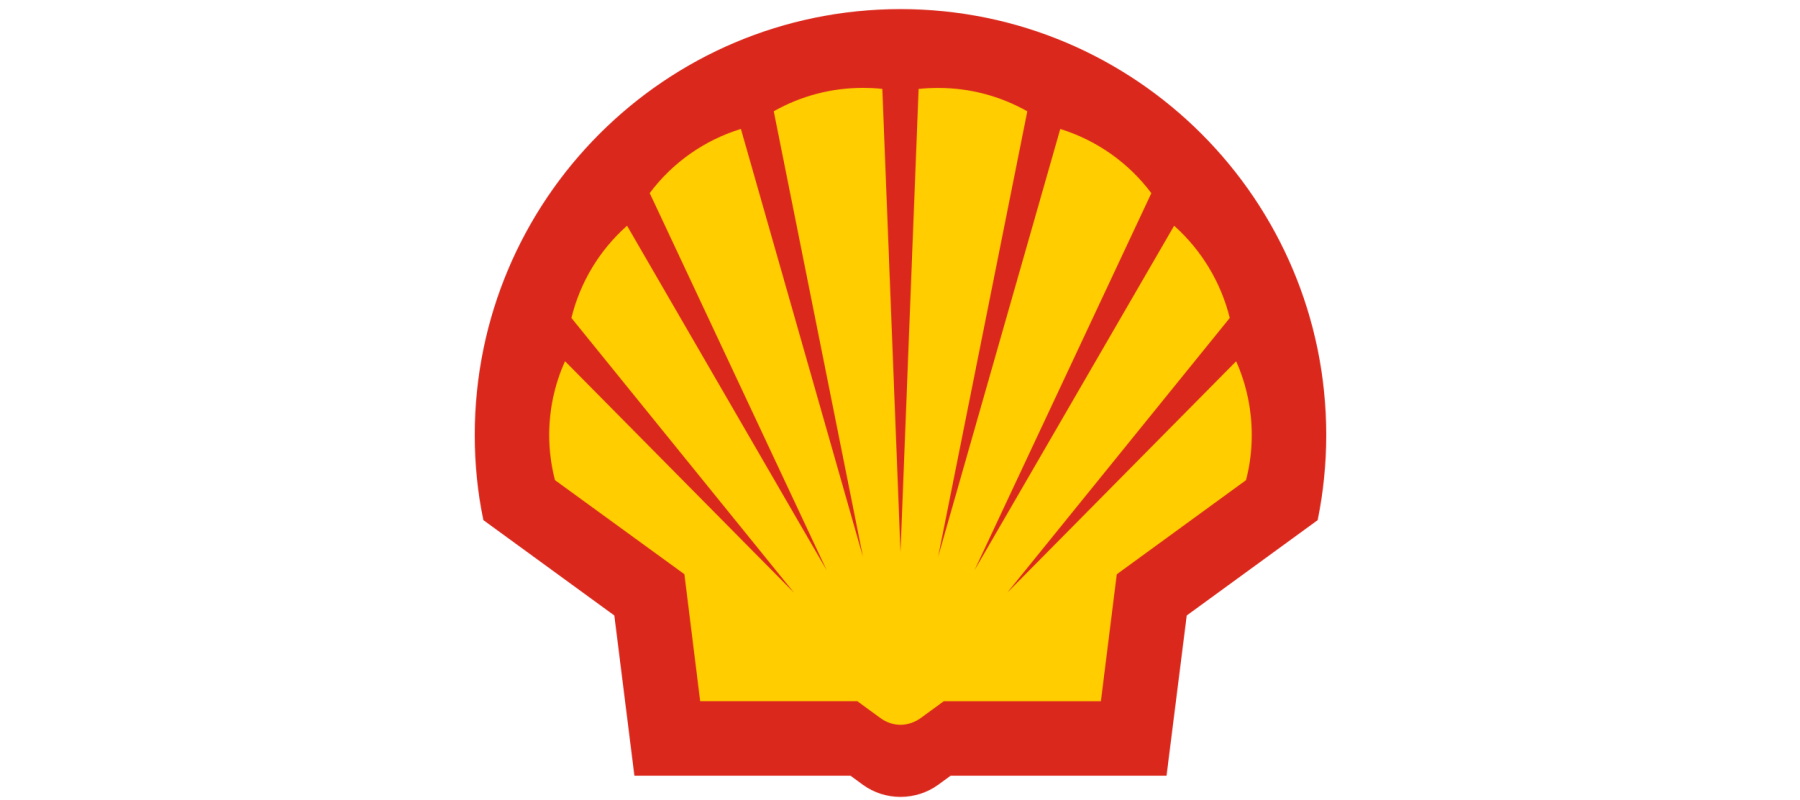 Shell organiseert review global media account; actievoerders willen boycot